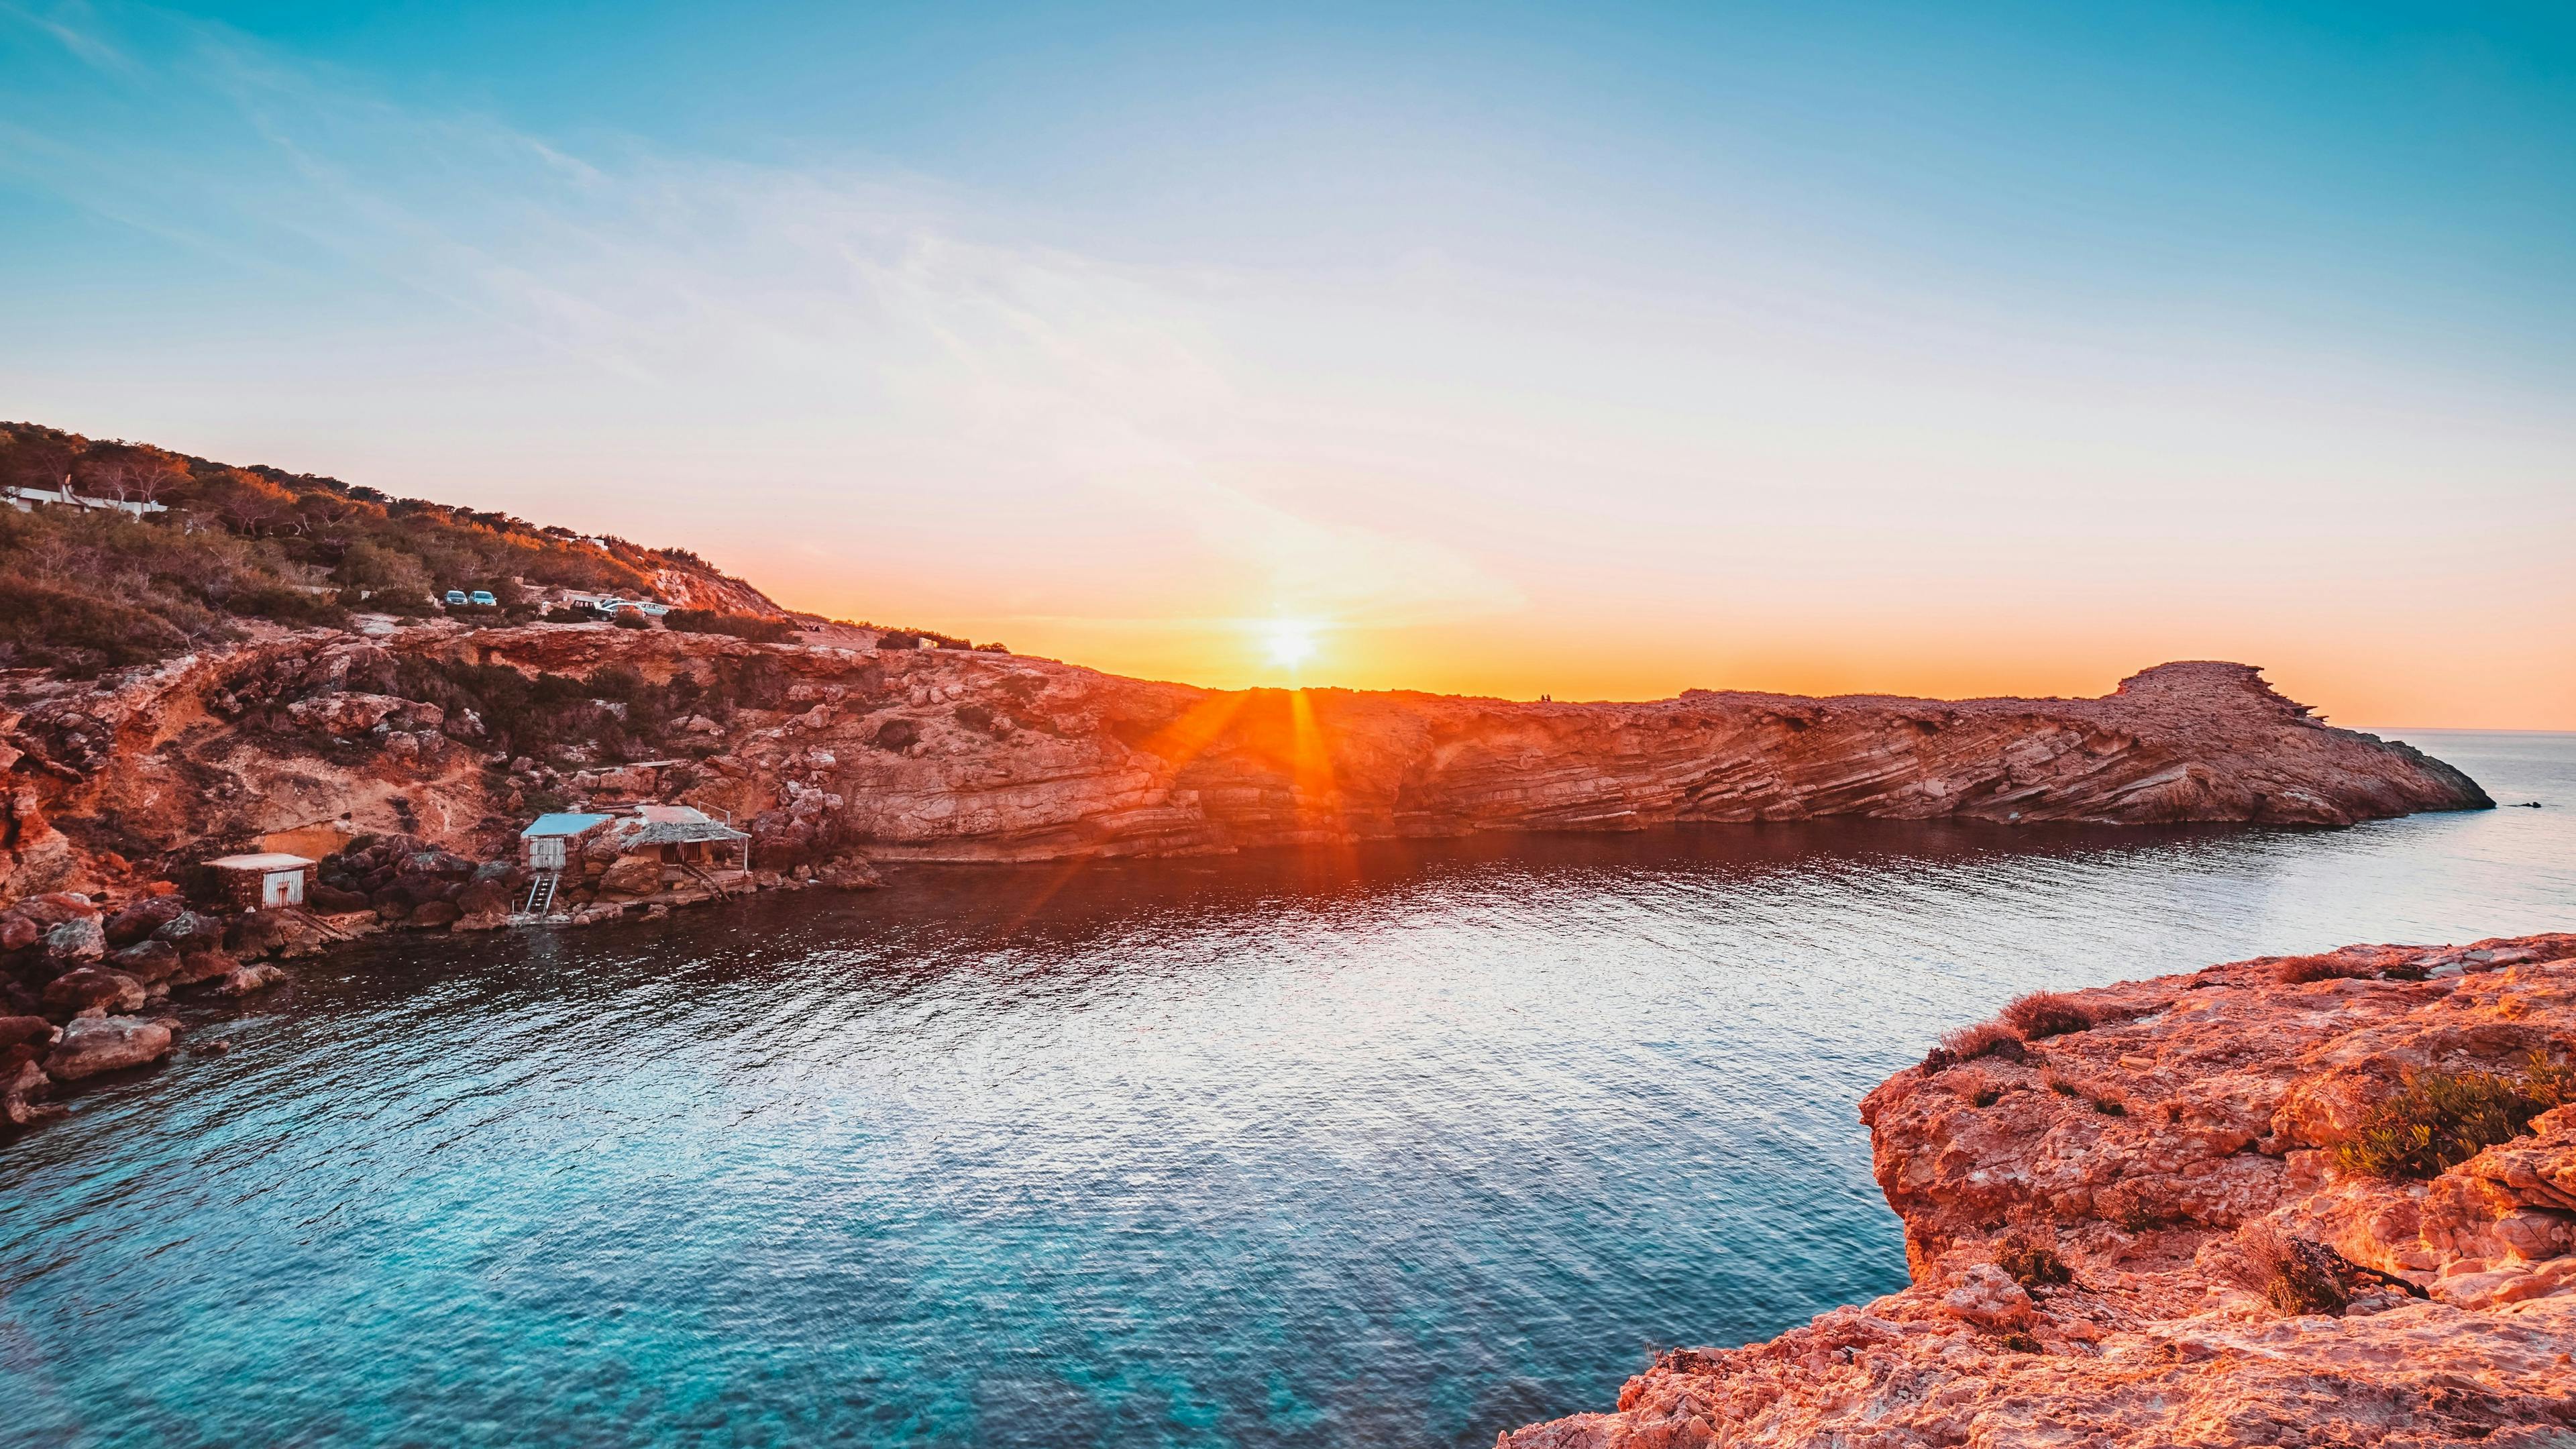 The sun setting over rocks near a bay in Ibiza.